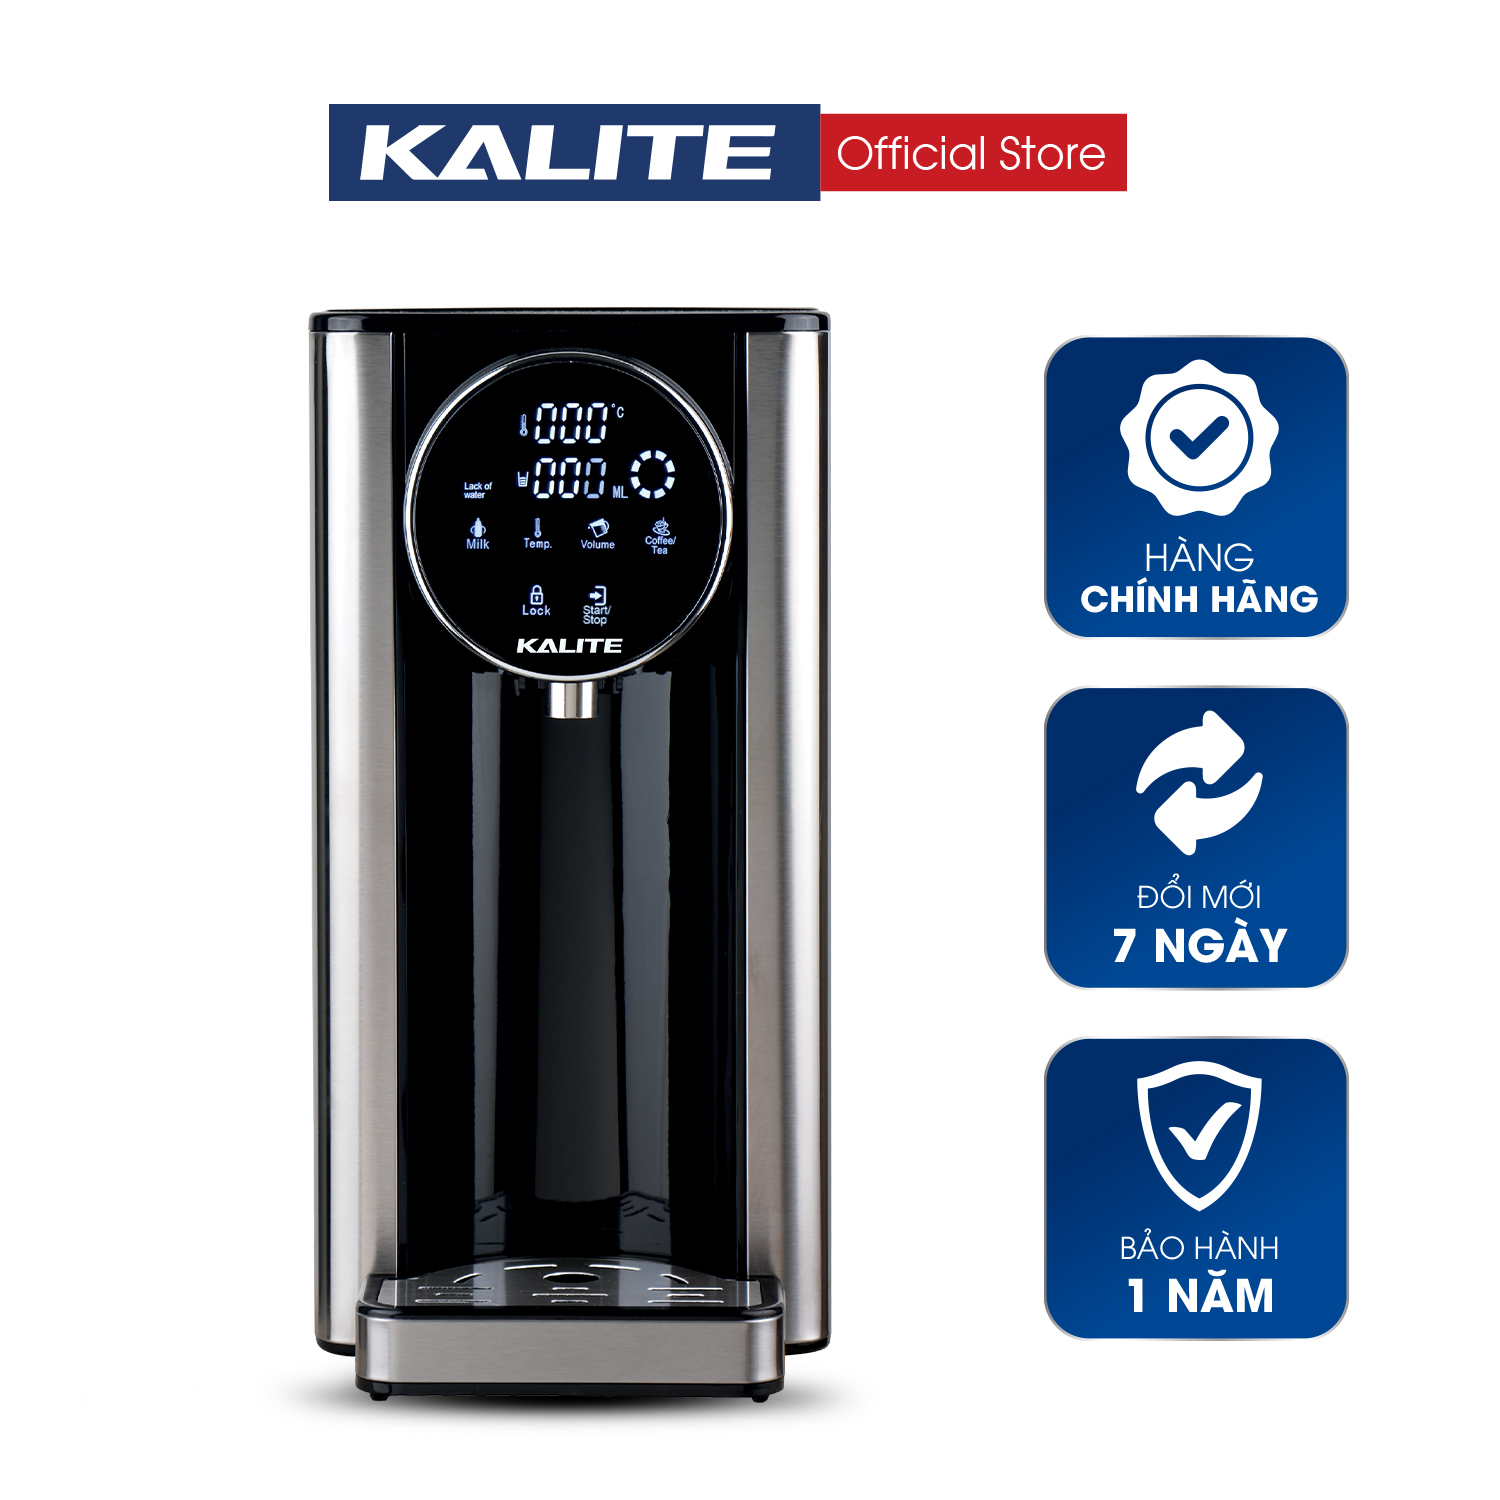 Bình thuỷ điện Kalite KL 888, dung tích 2,7L, công suất 2200W, bảng điều khiển cảm ứng, tùy chỉnh nhiệt độ và lượng nước, hệ thống lọc RO tự động, hàng chính hãng